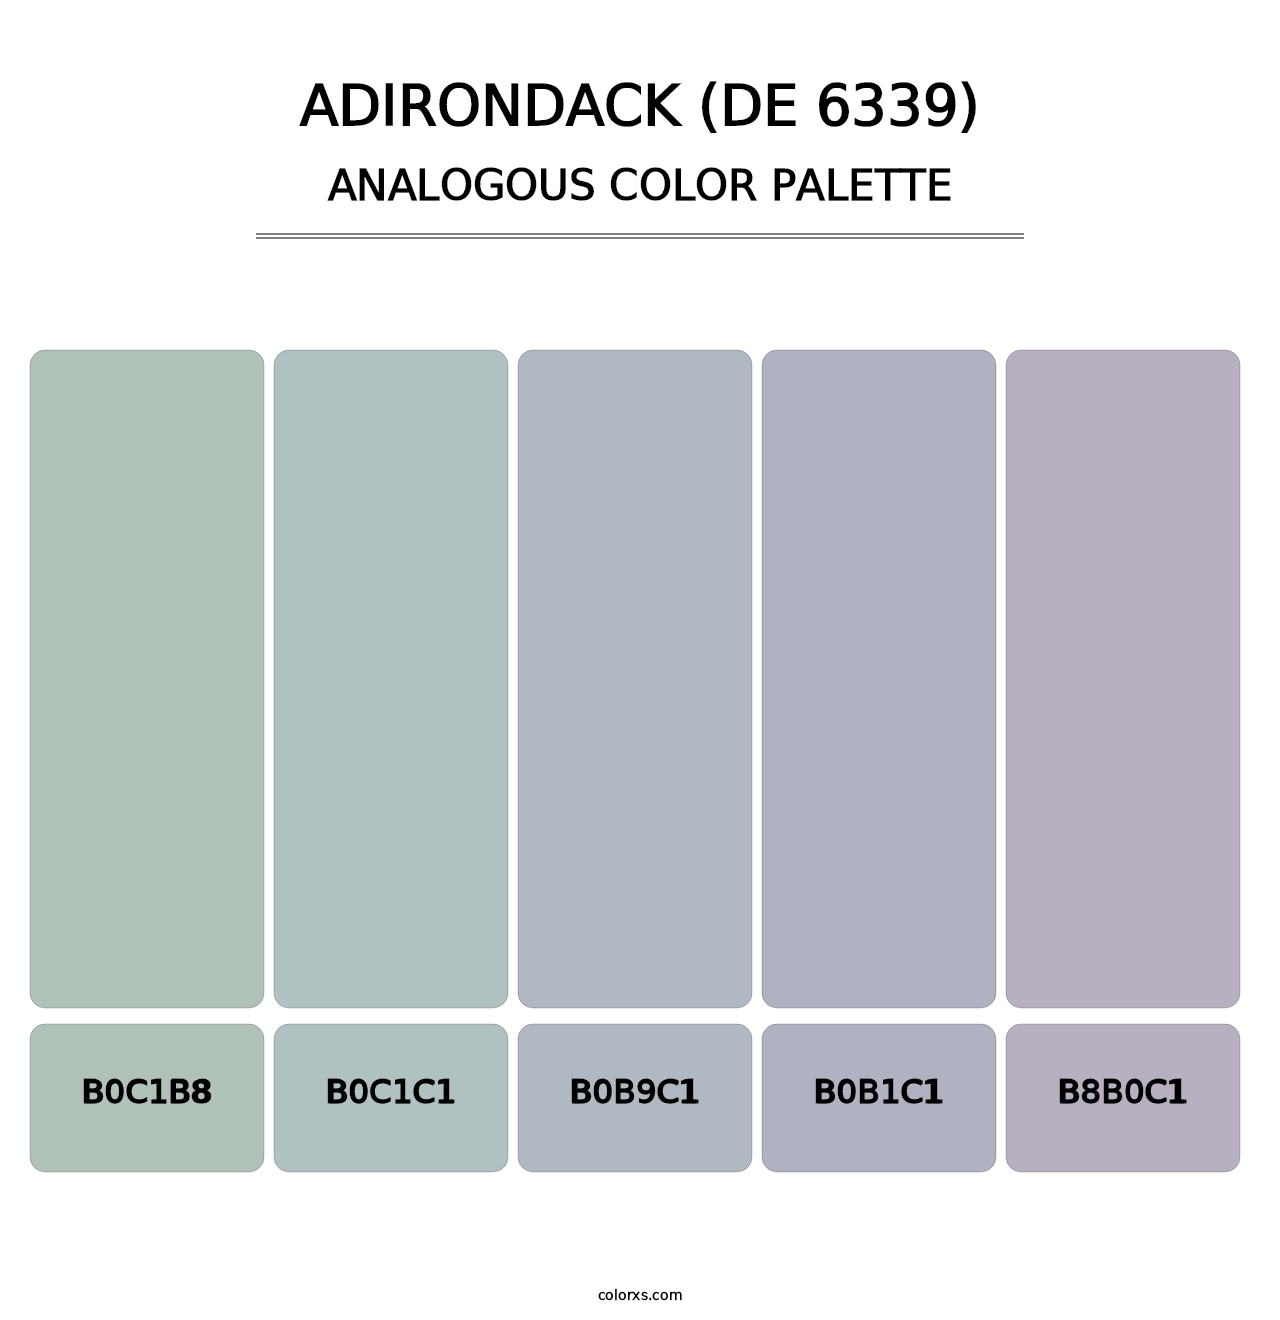 Adirondack (DE 6339) - Analogous Color Palette